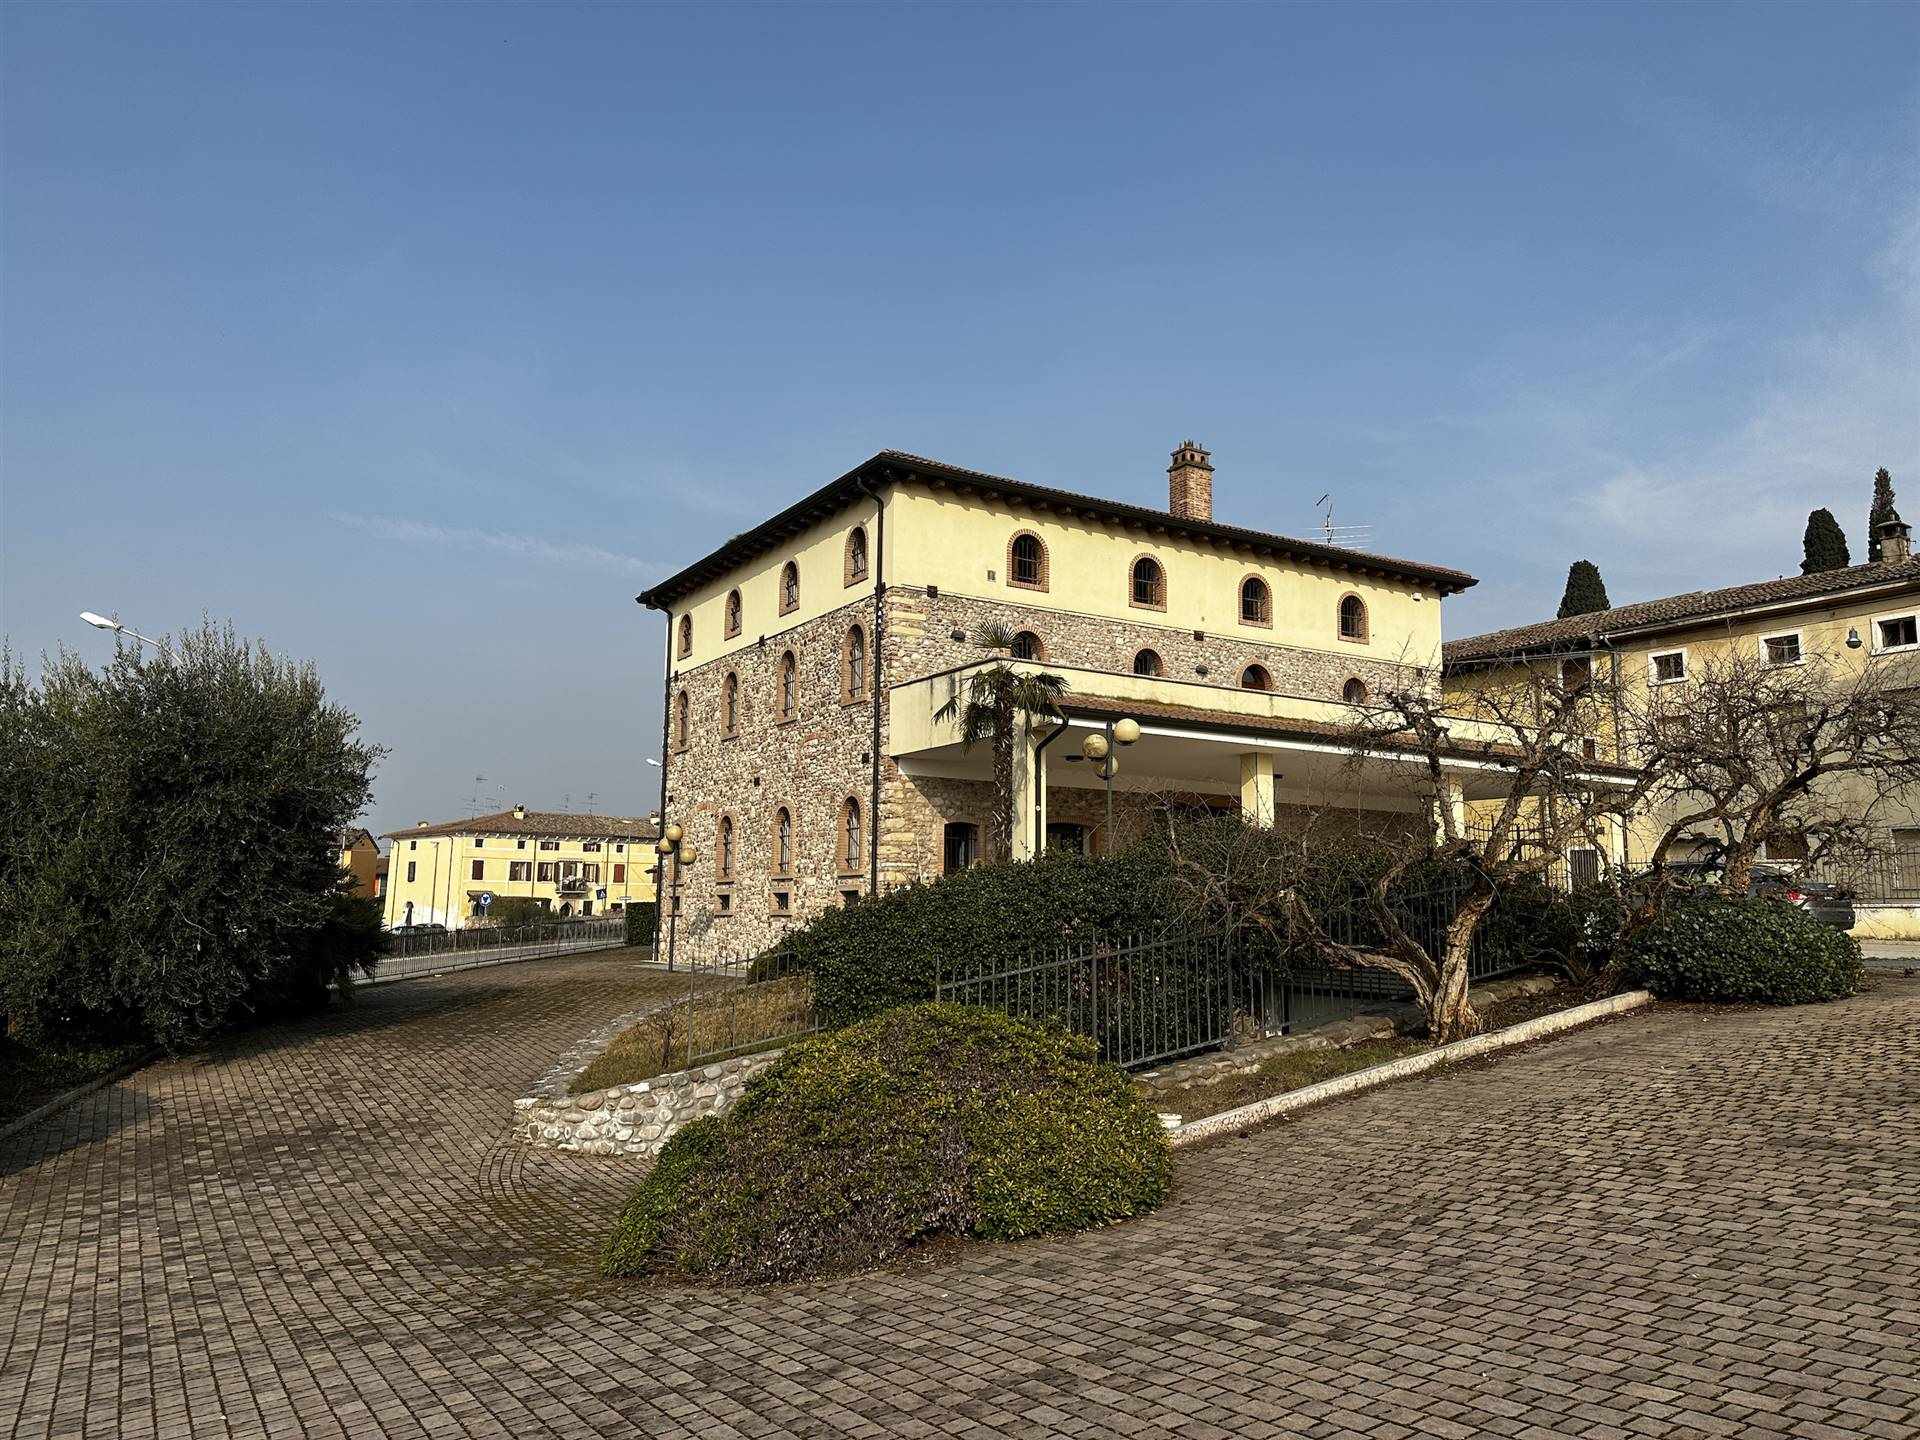 Il Palazzo si trova in località Sandrà, vicino alle terme di Colà e a pochi chilometri di distanza dal lago di Garda ( 5 km ). E' distribuito su 3 